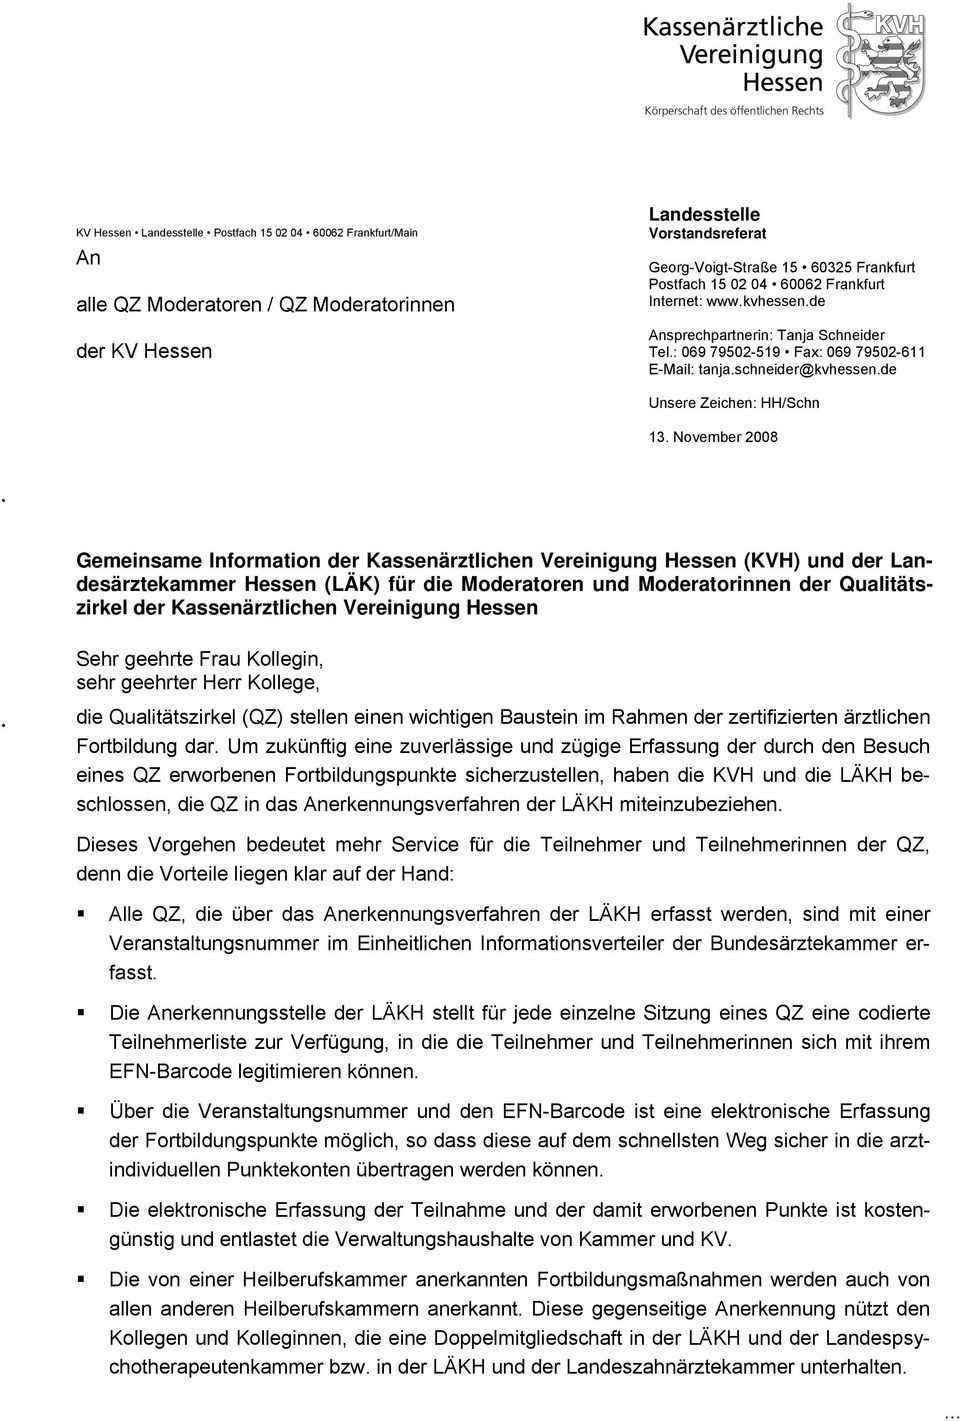 November 2008 Gemeinsame Information der Kassenärztlichen Vereinigung Hessen (KVH) und der Landesärztekammer Hessen (LÄK) für die Moderatoren und Moderatorinnen der Qualitätszirkel der